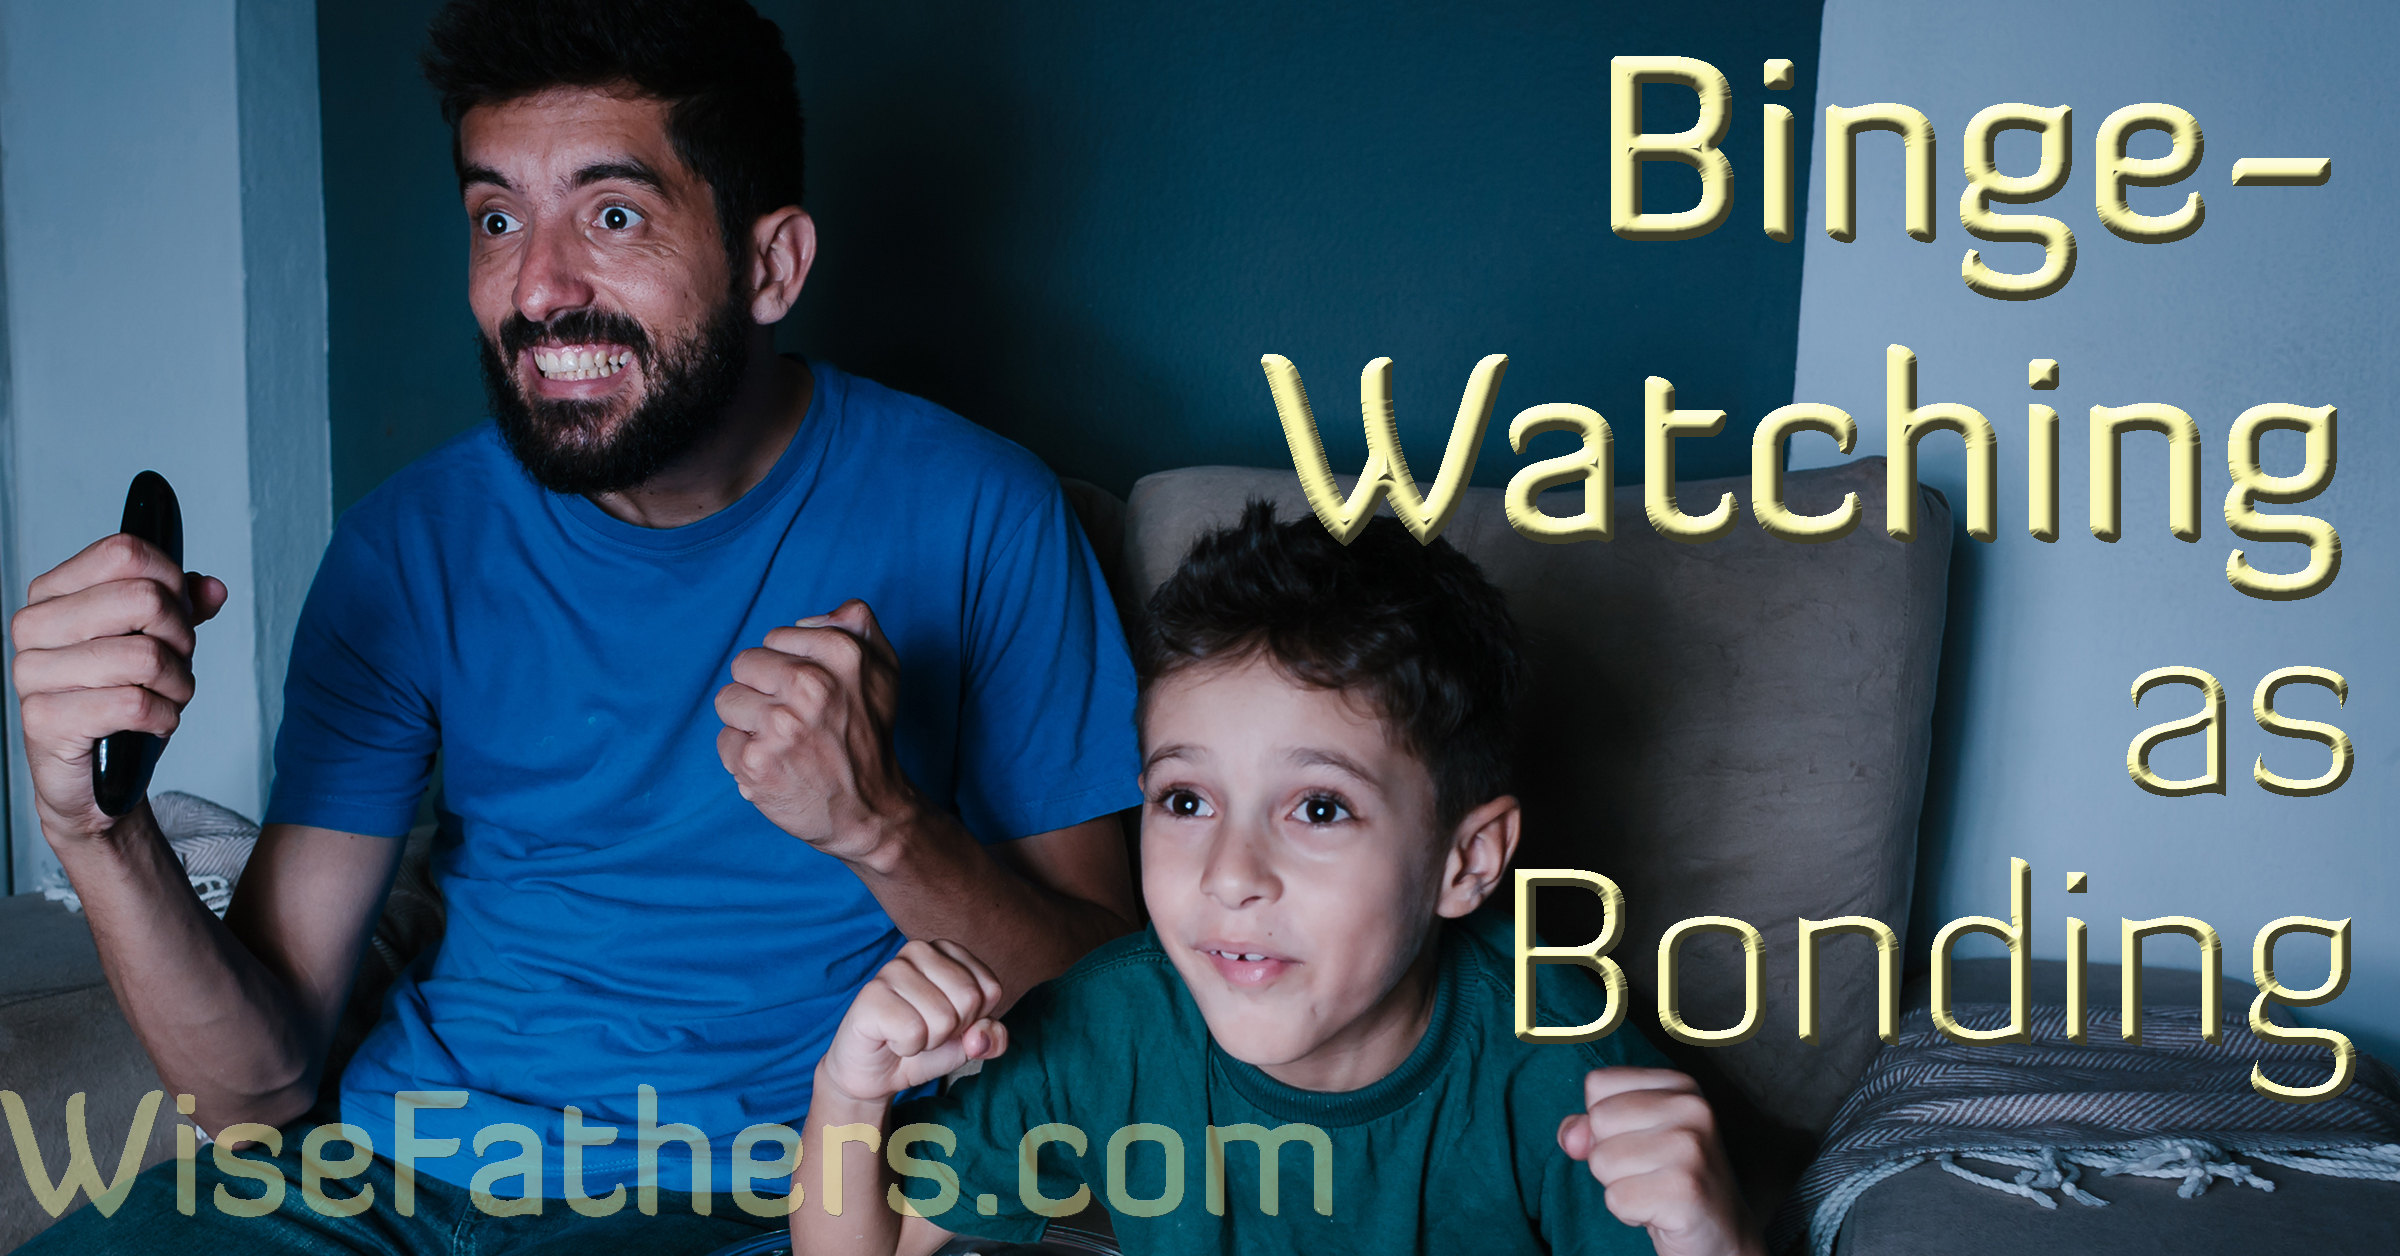 Binge-Watching as Bonding